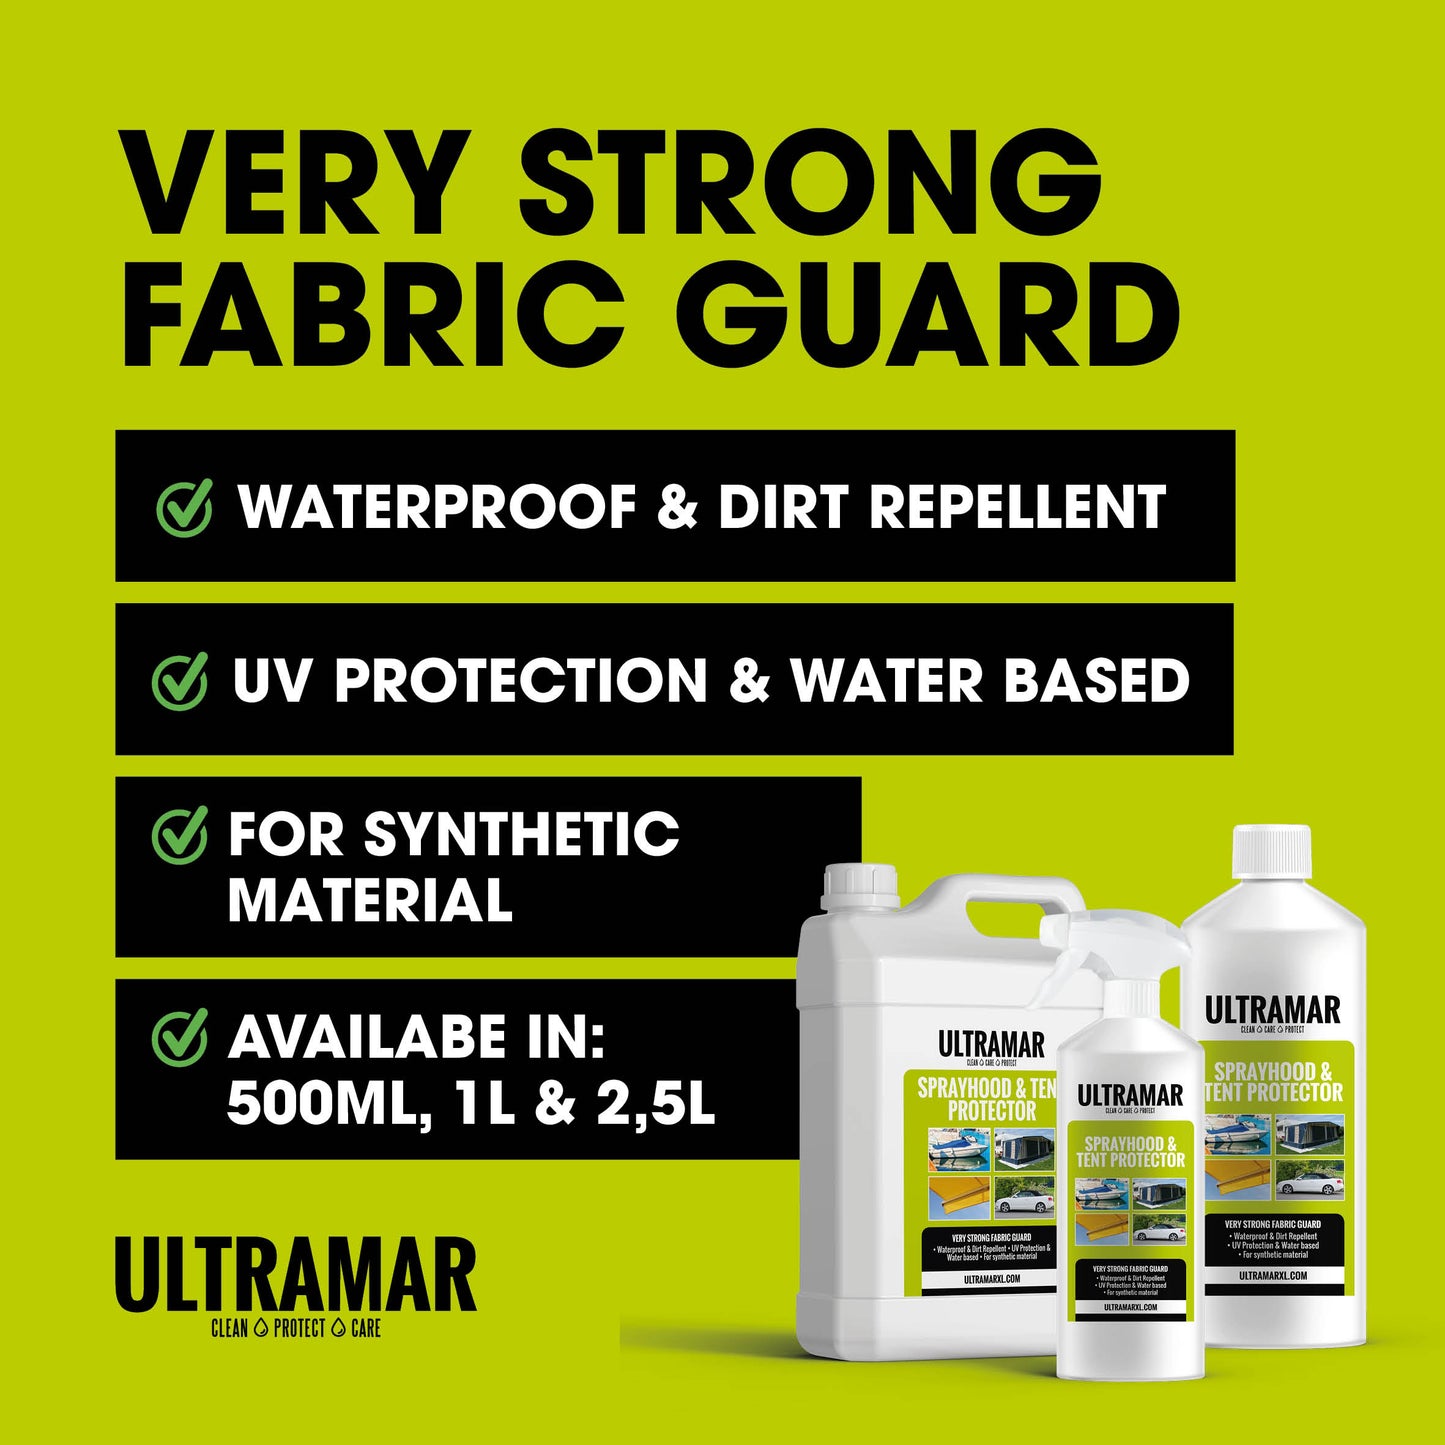 Imprægneringsmiddel til din cabriolet: Sprayhood & Tent Protector